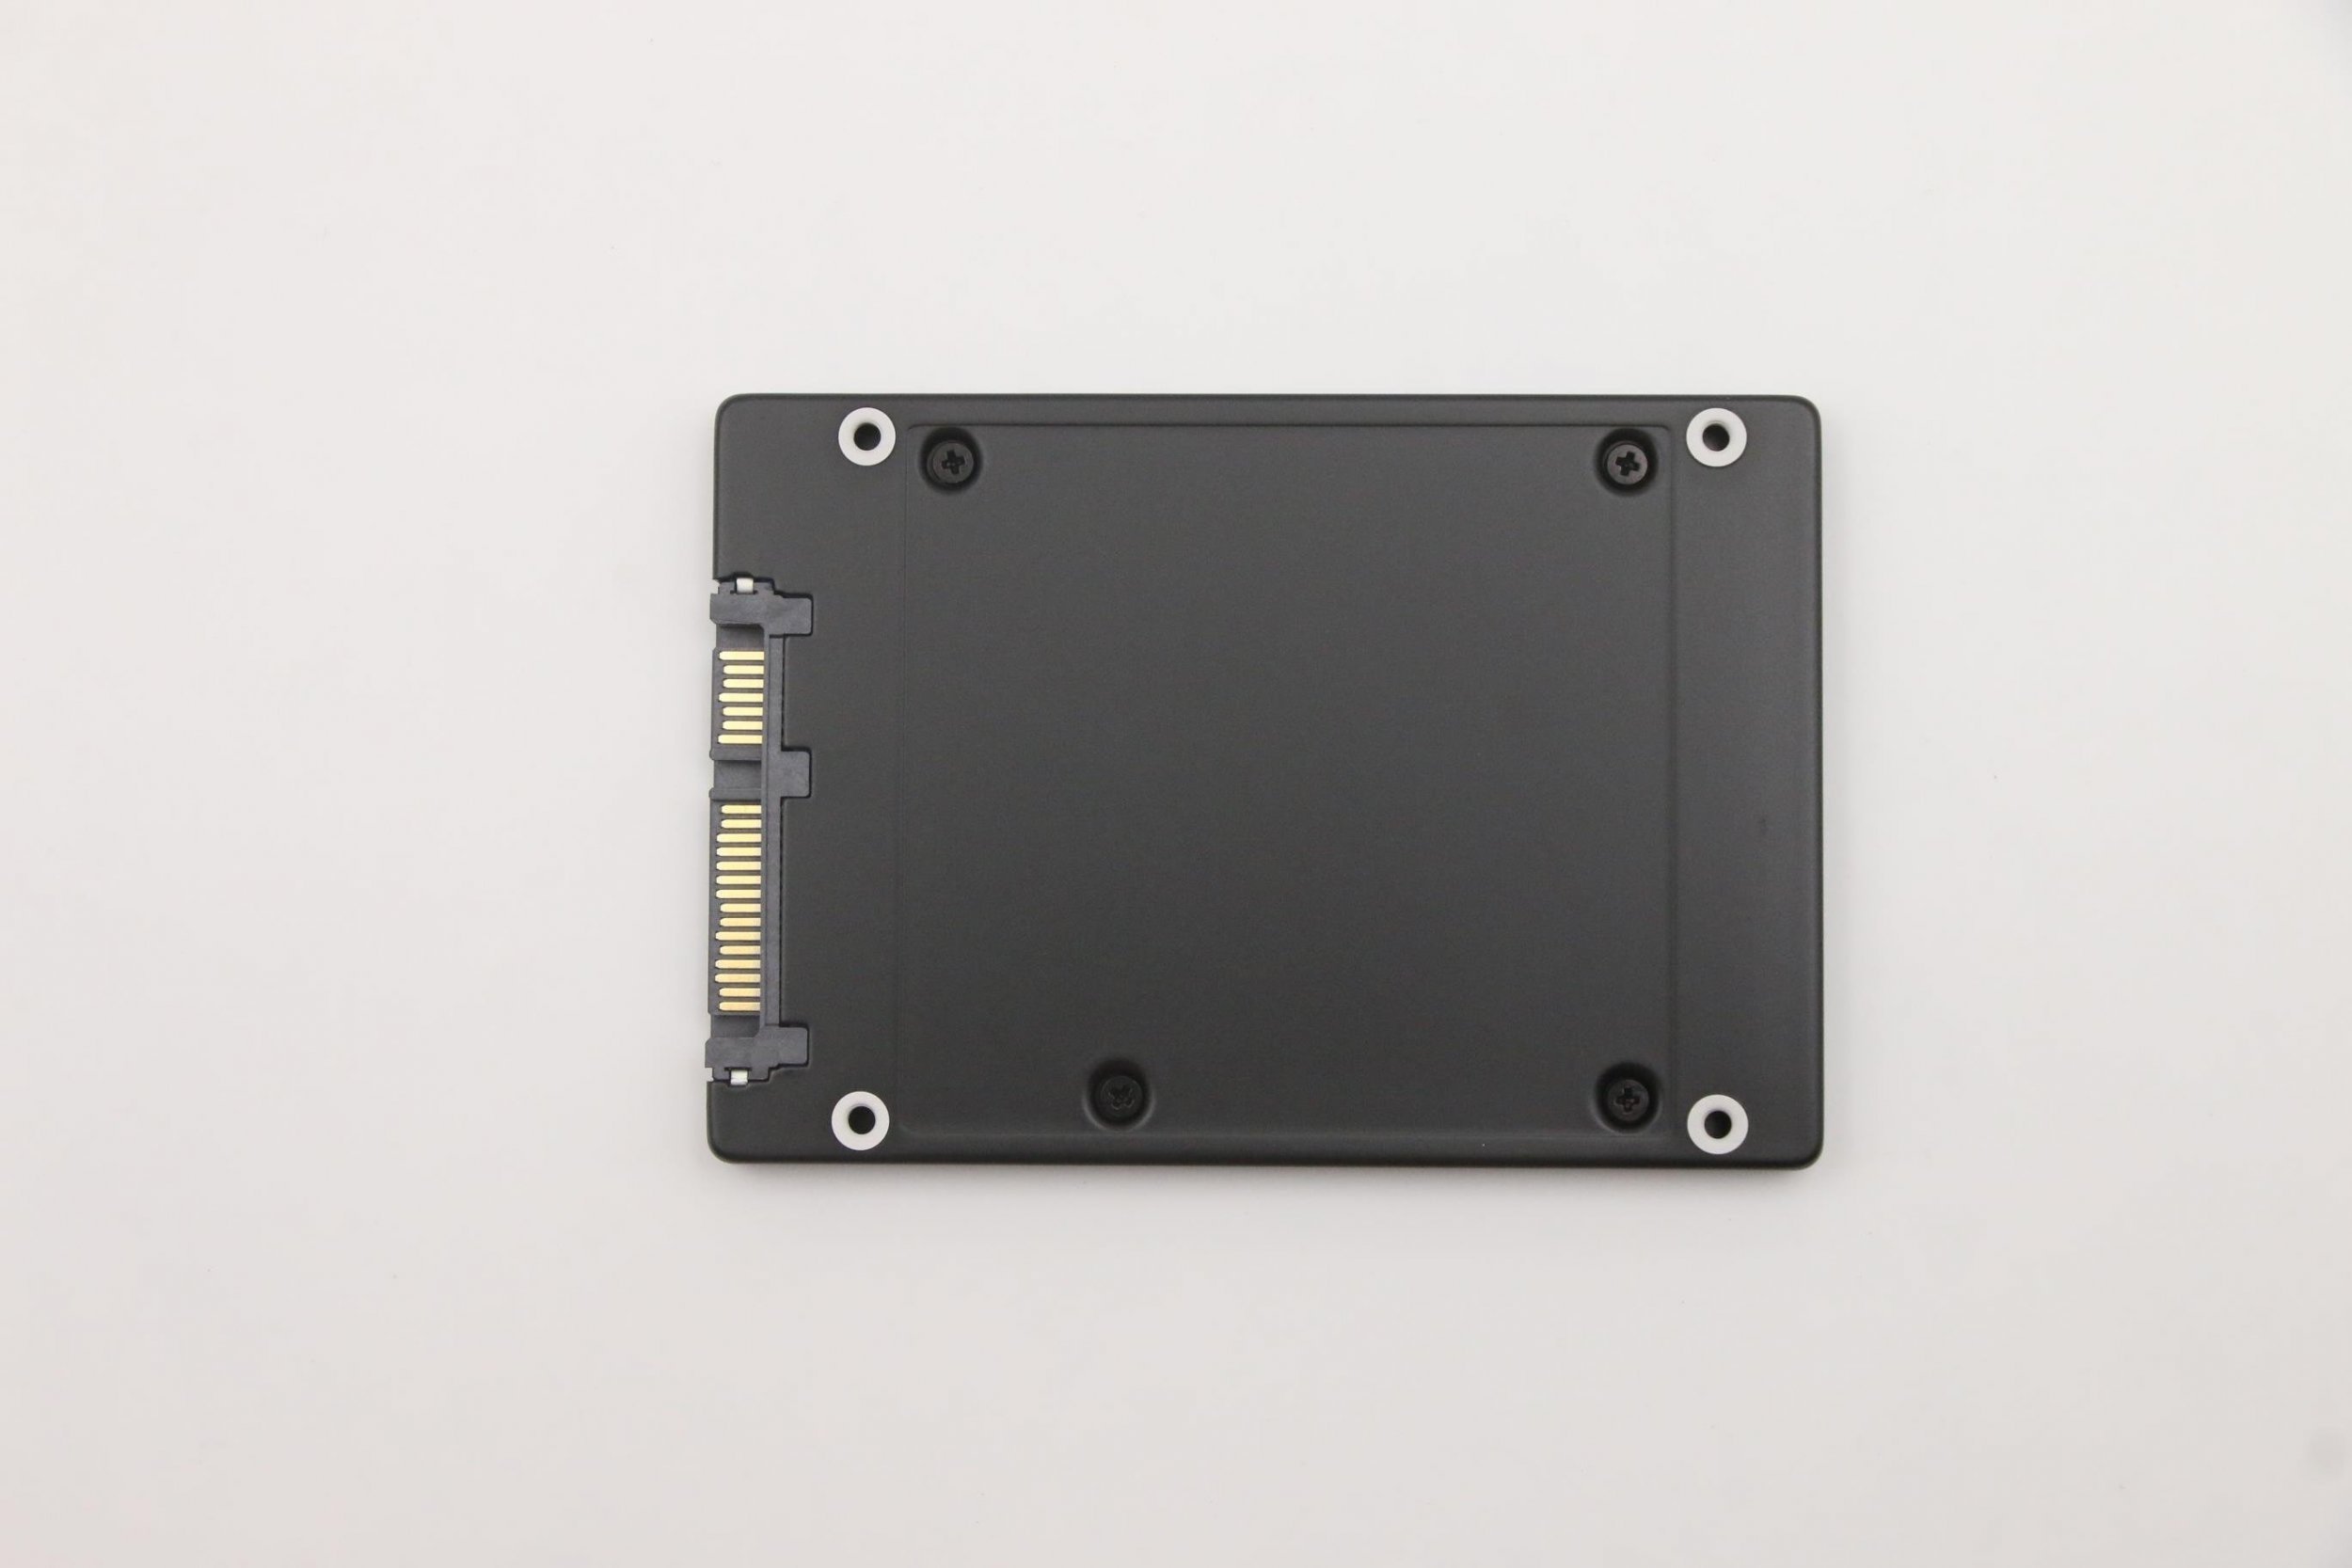 Lenovo SSD, 256G, 2,5`, 7 mm, SATA3, SAM